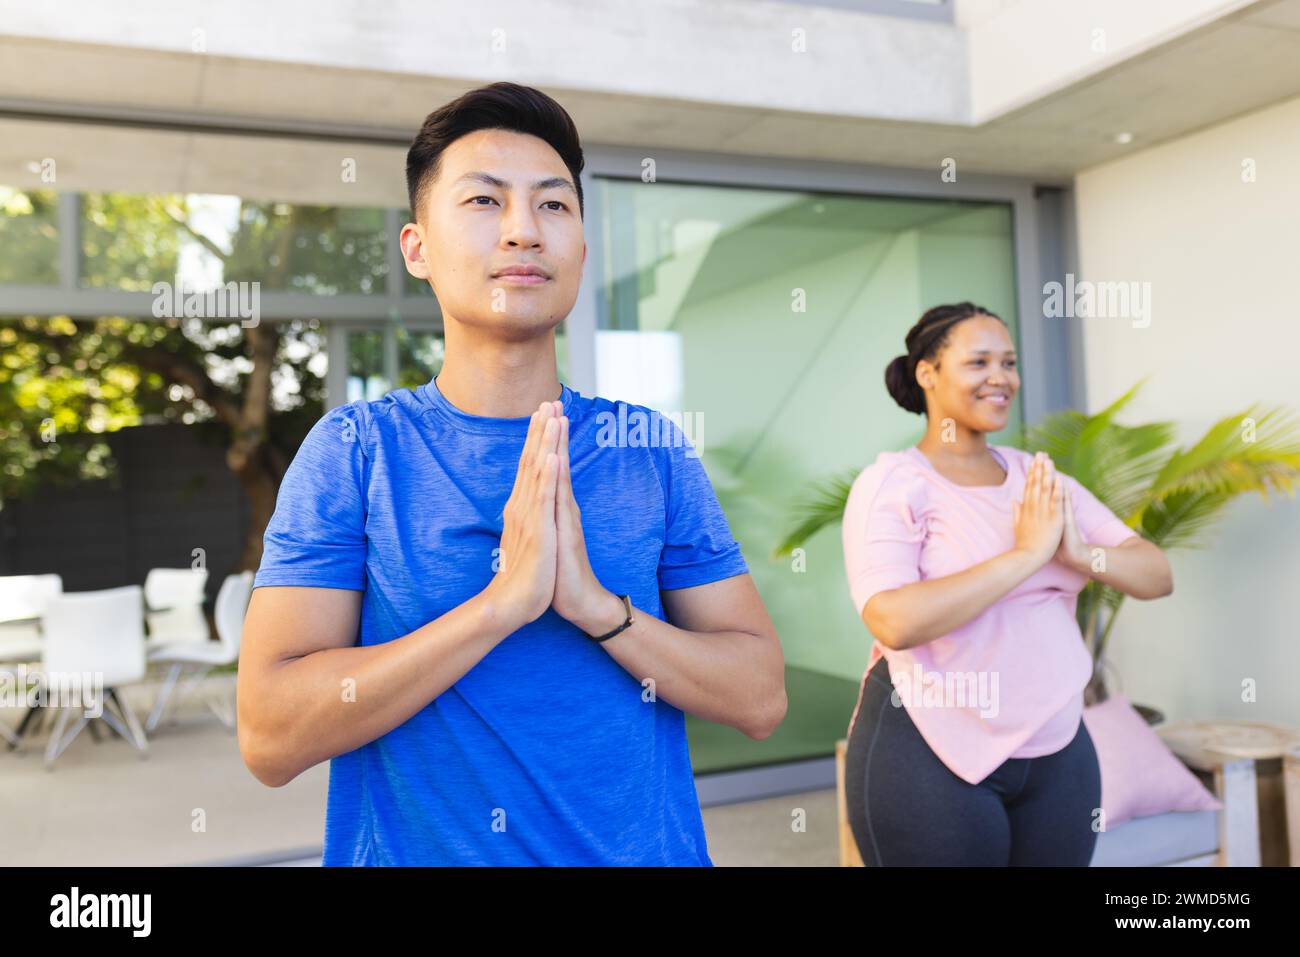 Young Asian man and biracial woman practice yoga outdoors Stock Photo